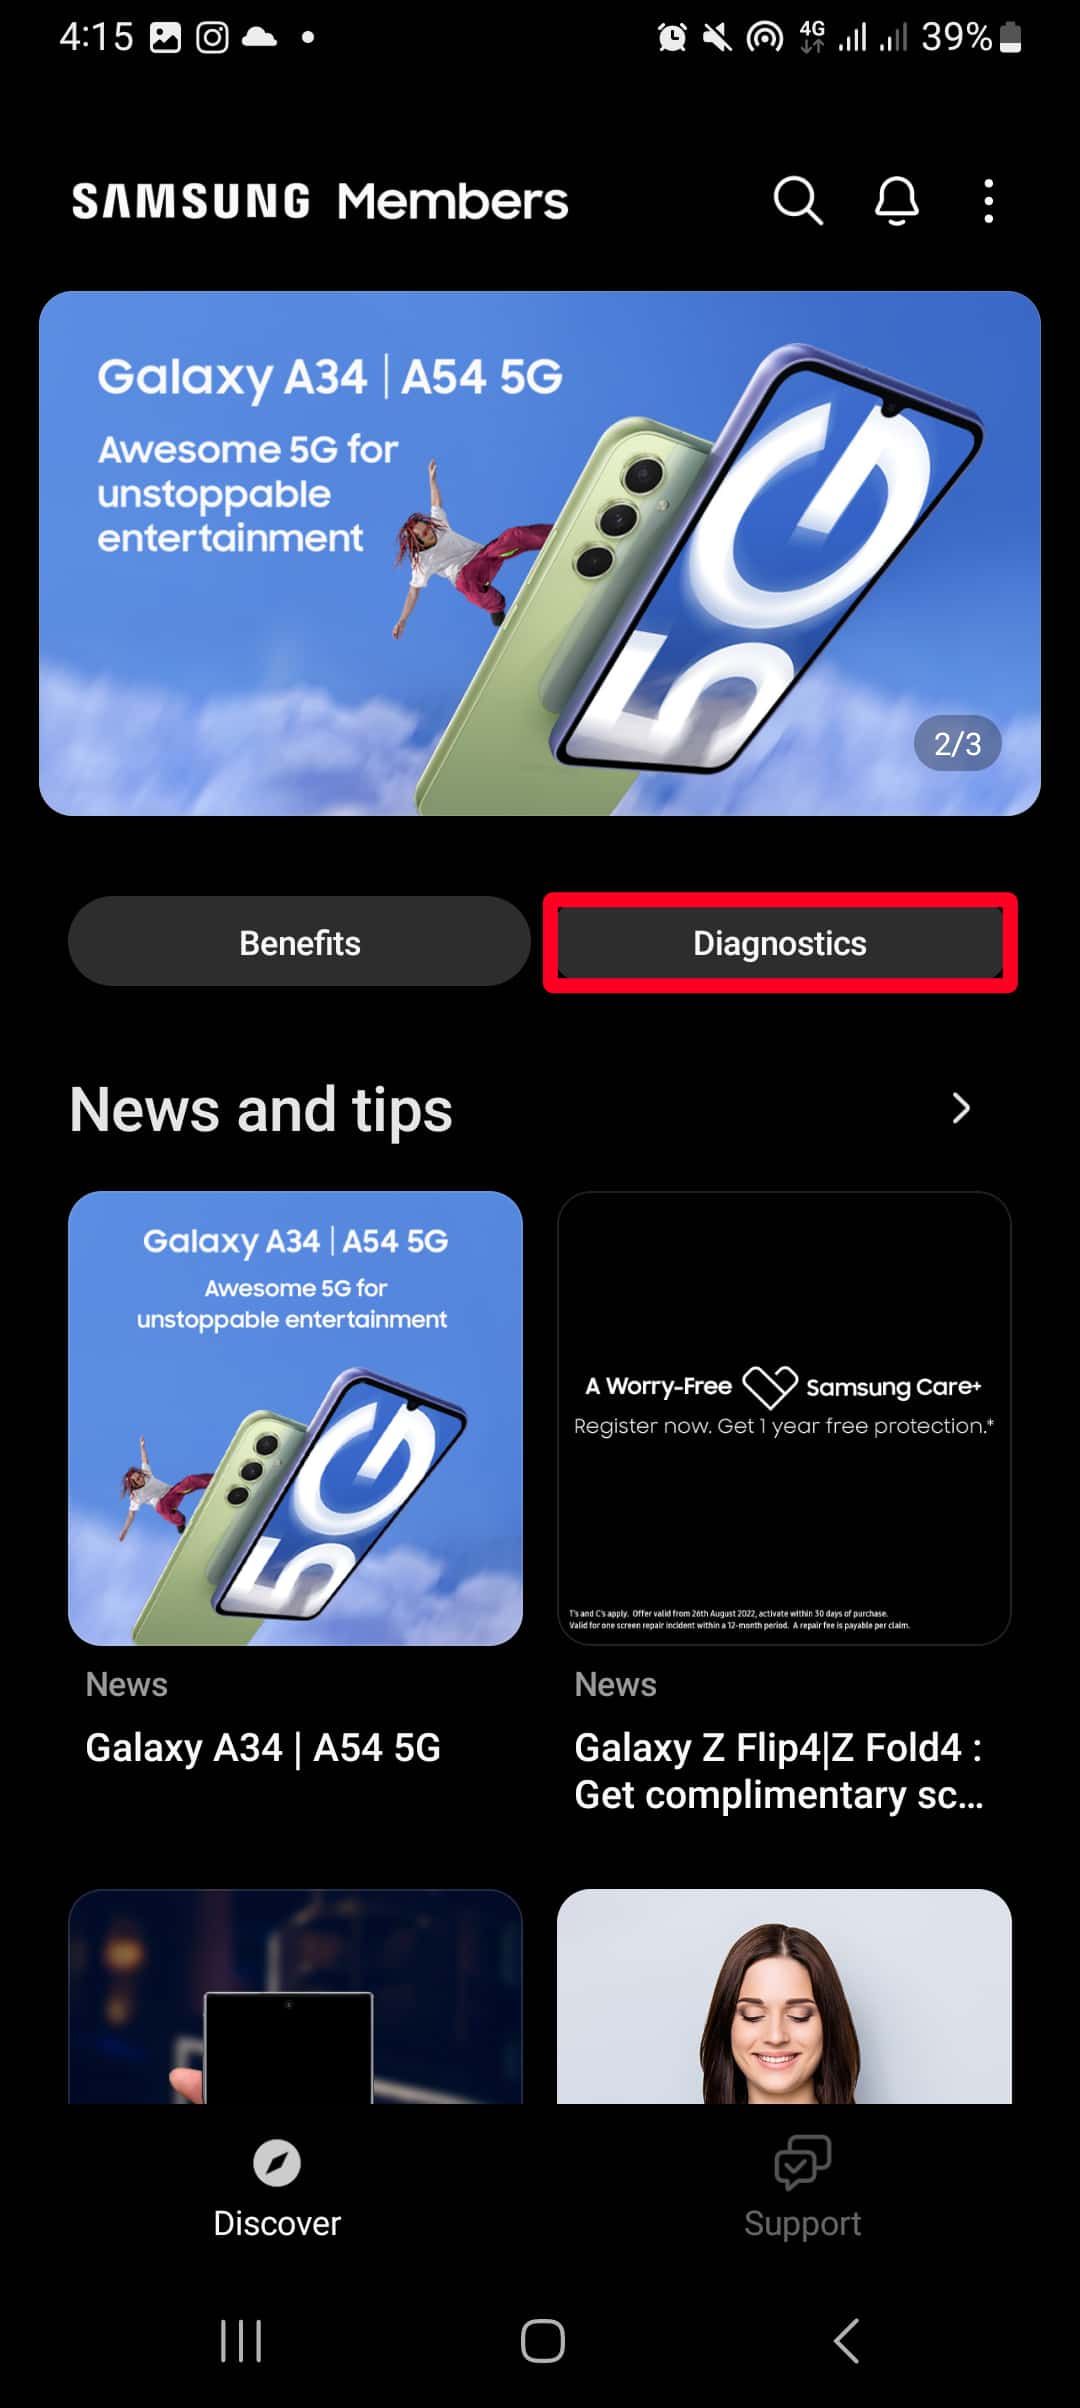 Captura de tela do menu Discover no aplicativo Samsung Members